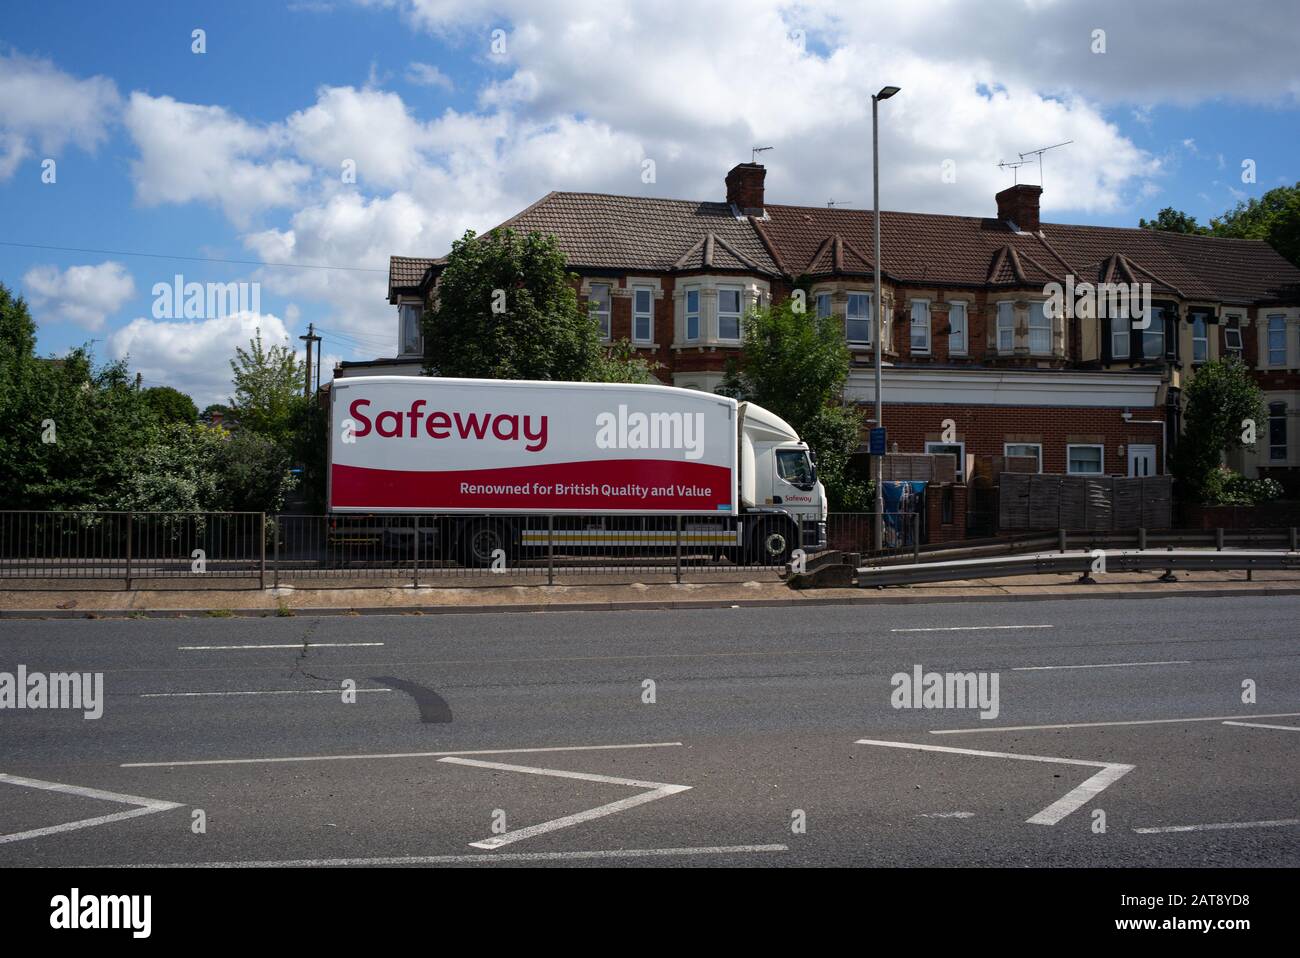 Safeway Supermarkt-Lkw mit dem Logo, das für britische Qualität und Wert bekannt ist, fahren auf einer Straße mit Häusern dahinter. Stockfoto